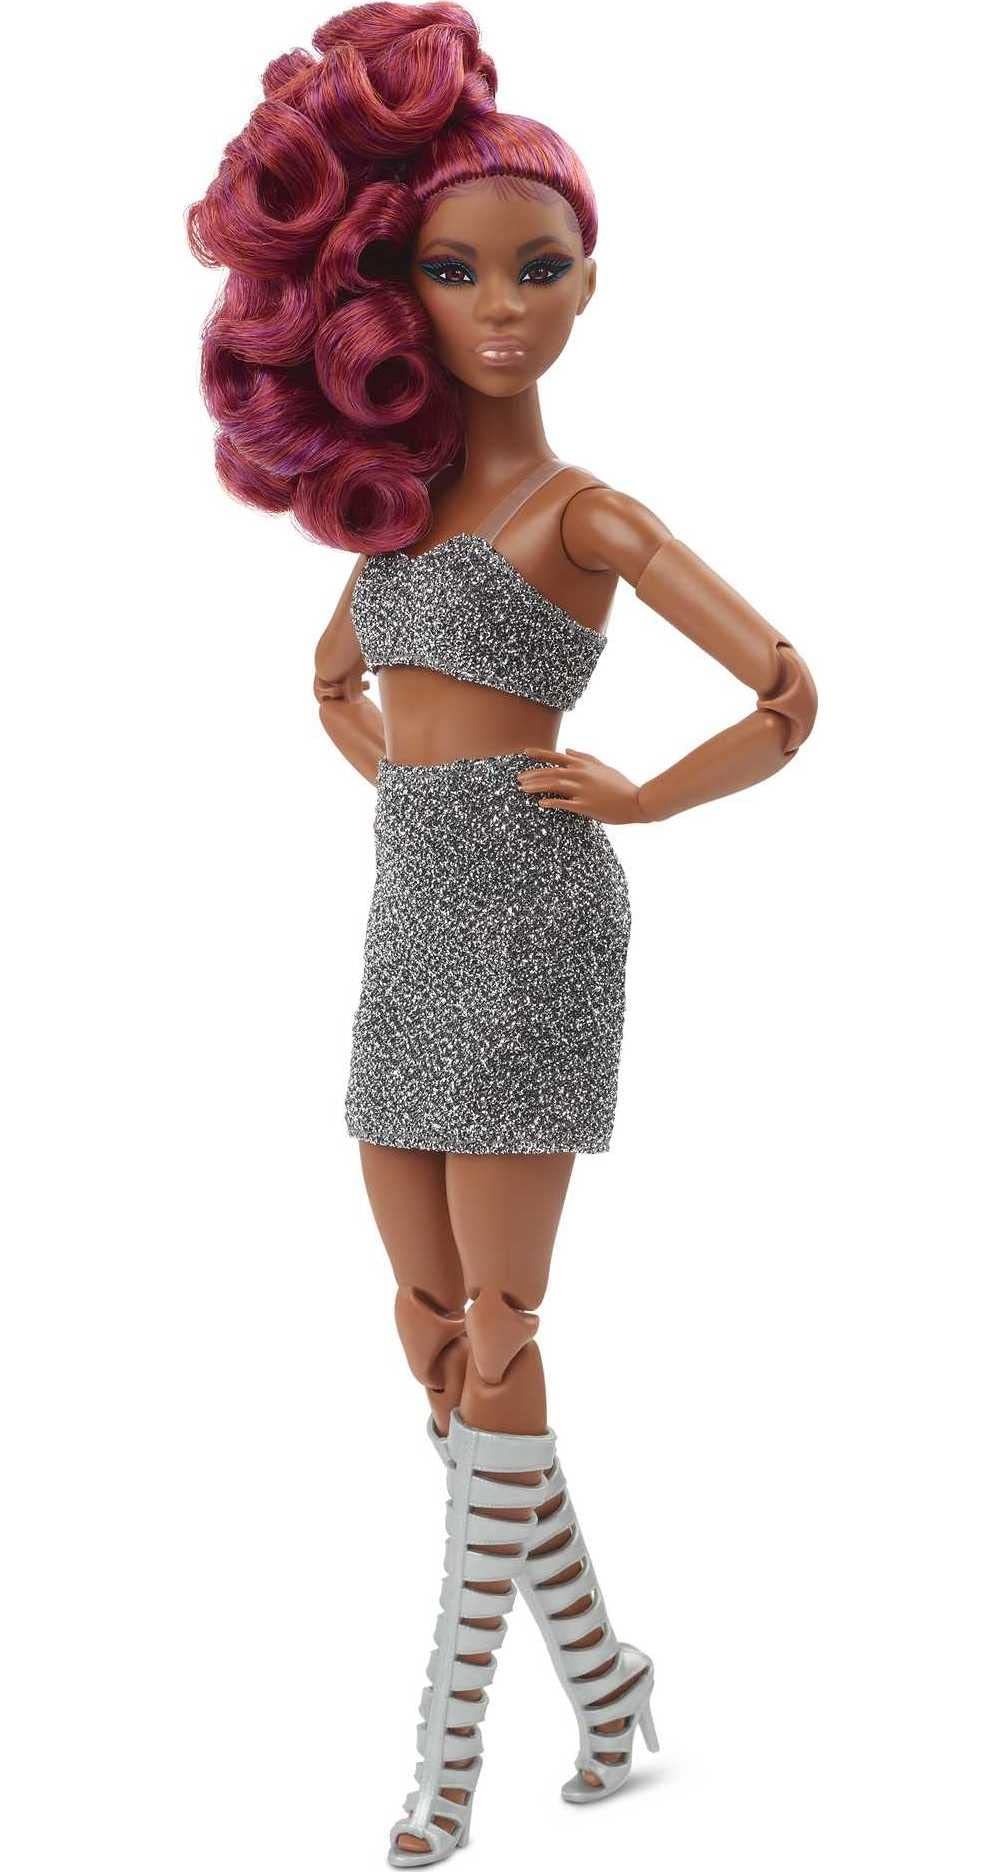 chic  Barbie Signature poupée de Collection articulée Looks aux Cheveux Roux bouclés, vêtue d´un Crop Top pailleté et d´une Jupe, Jouet Collector, HCB77 lKG9gpICb bien vendre